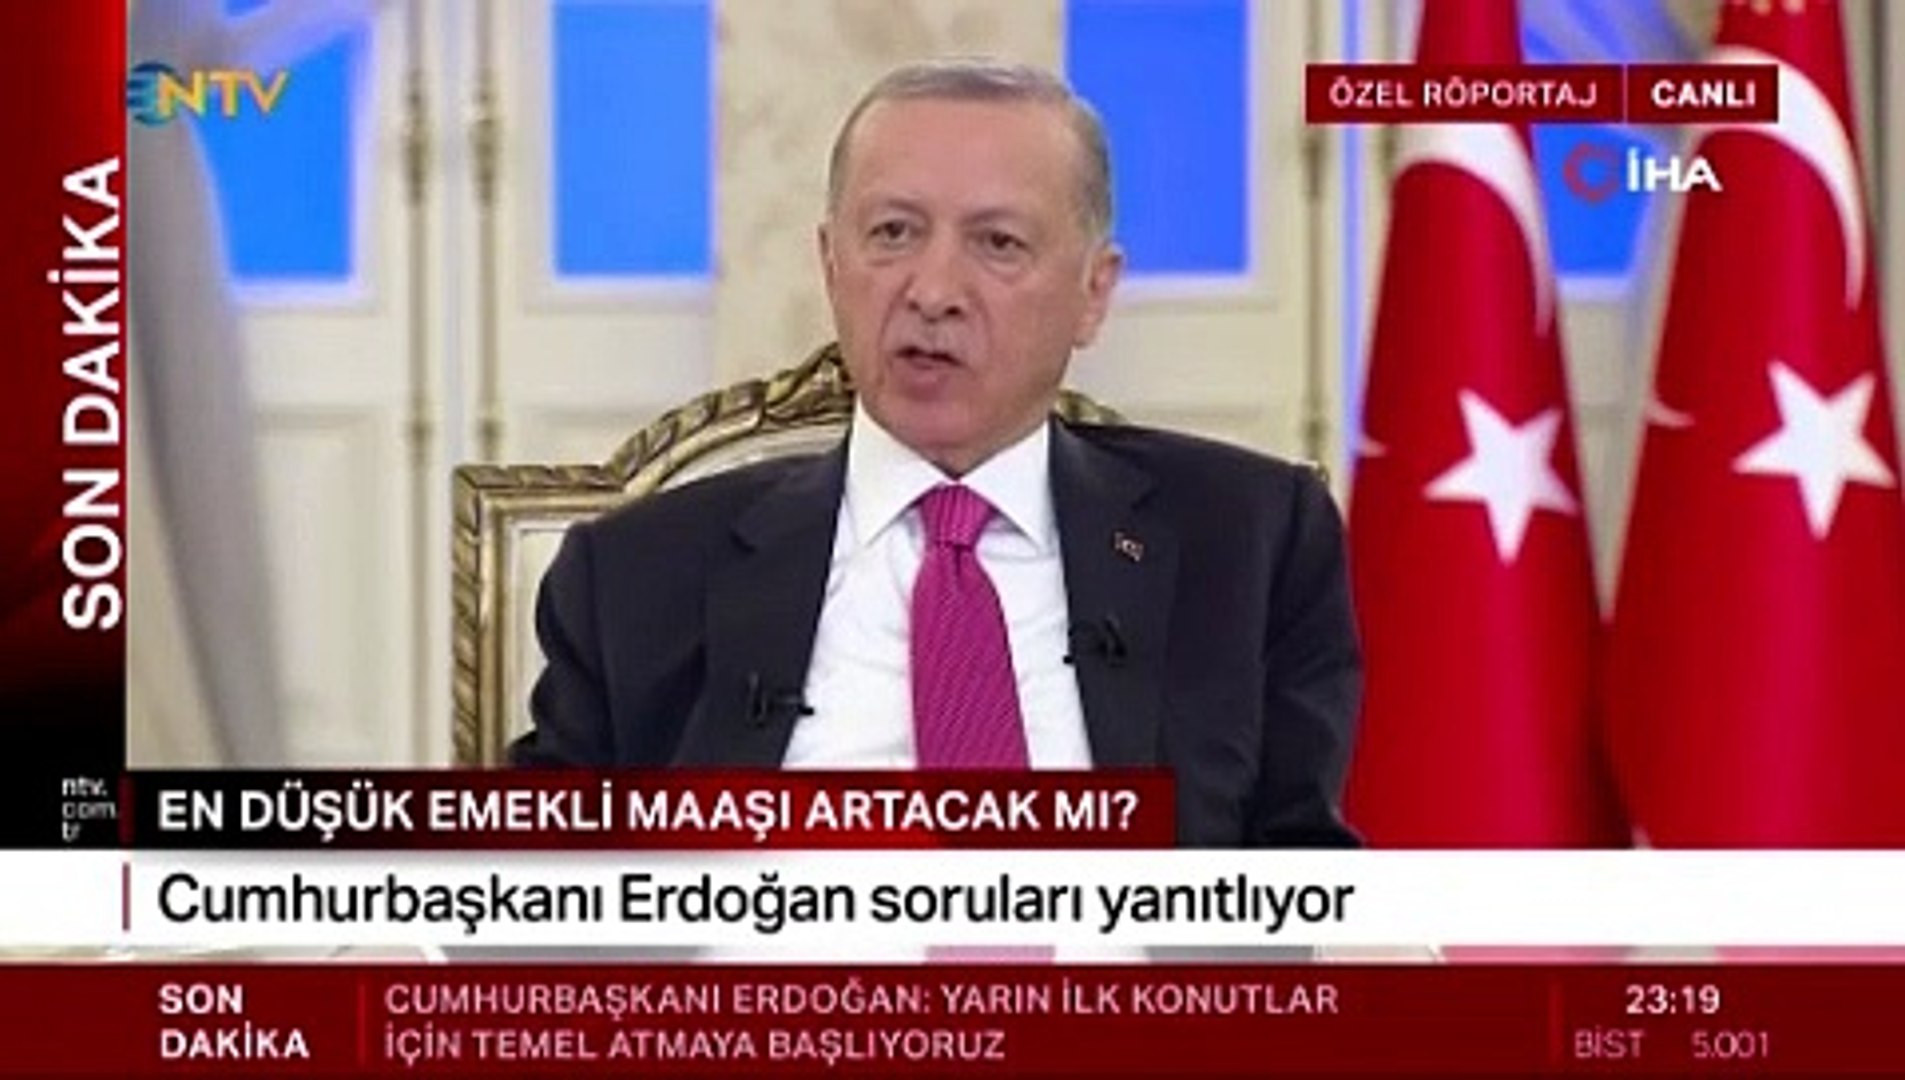 Erdoğan açıkladı: En düşük emekli maaşı 7.500 TL oldu!